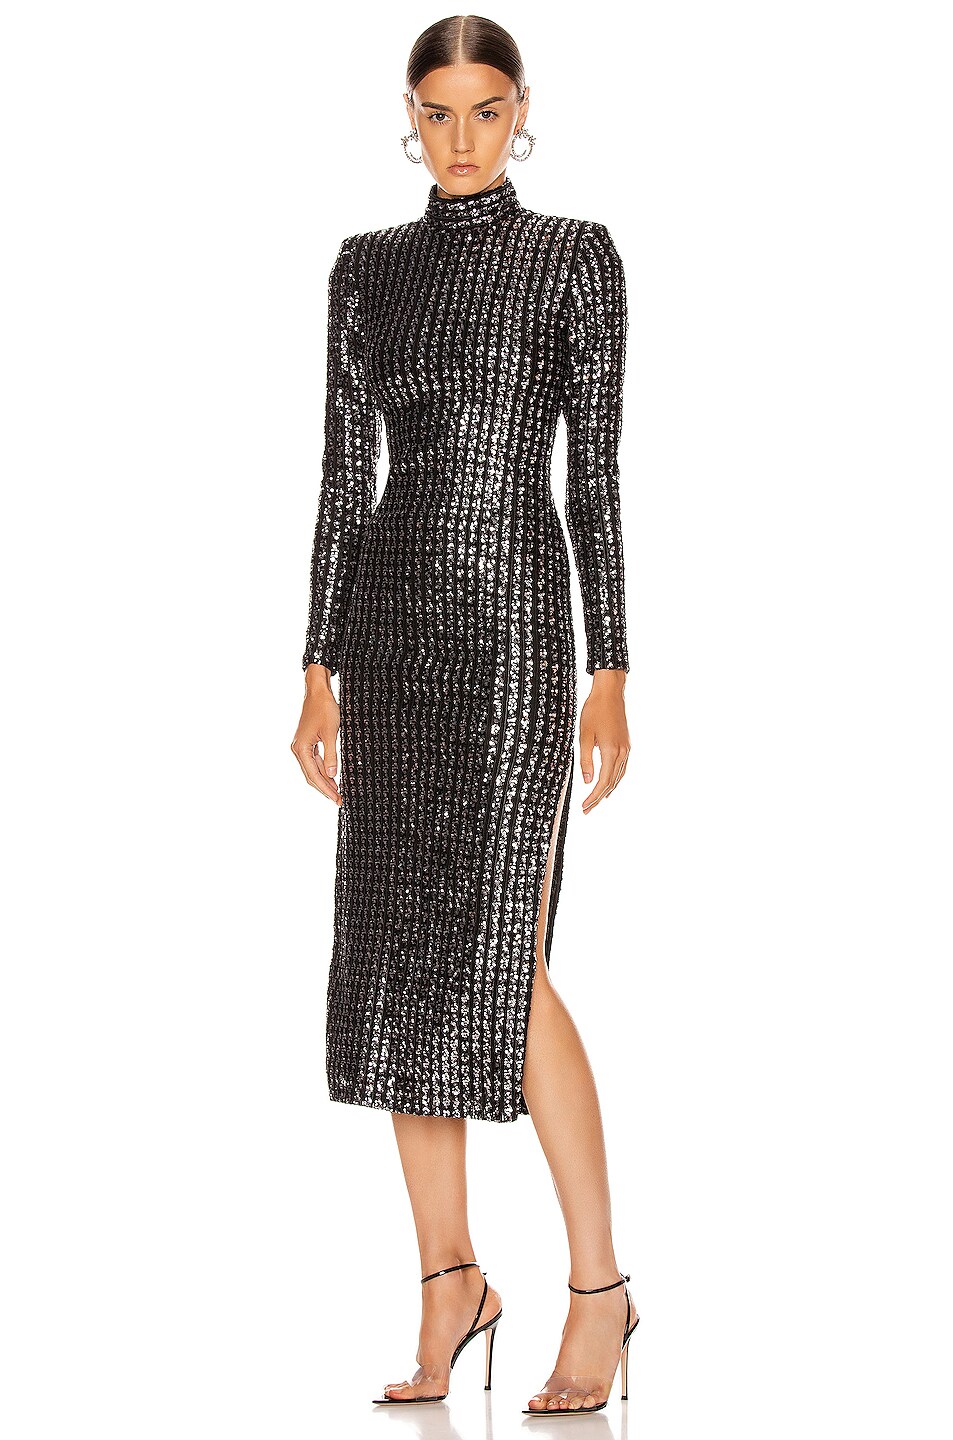 Smythe Sequin Side Slit Dress in Silver Sequin Stripe | FWRD